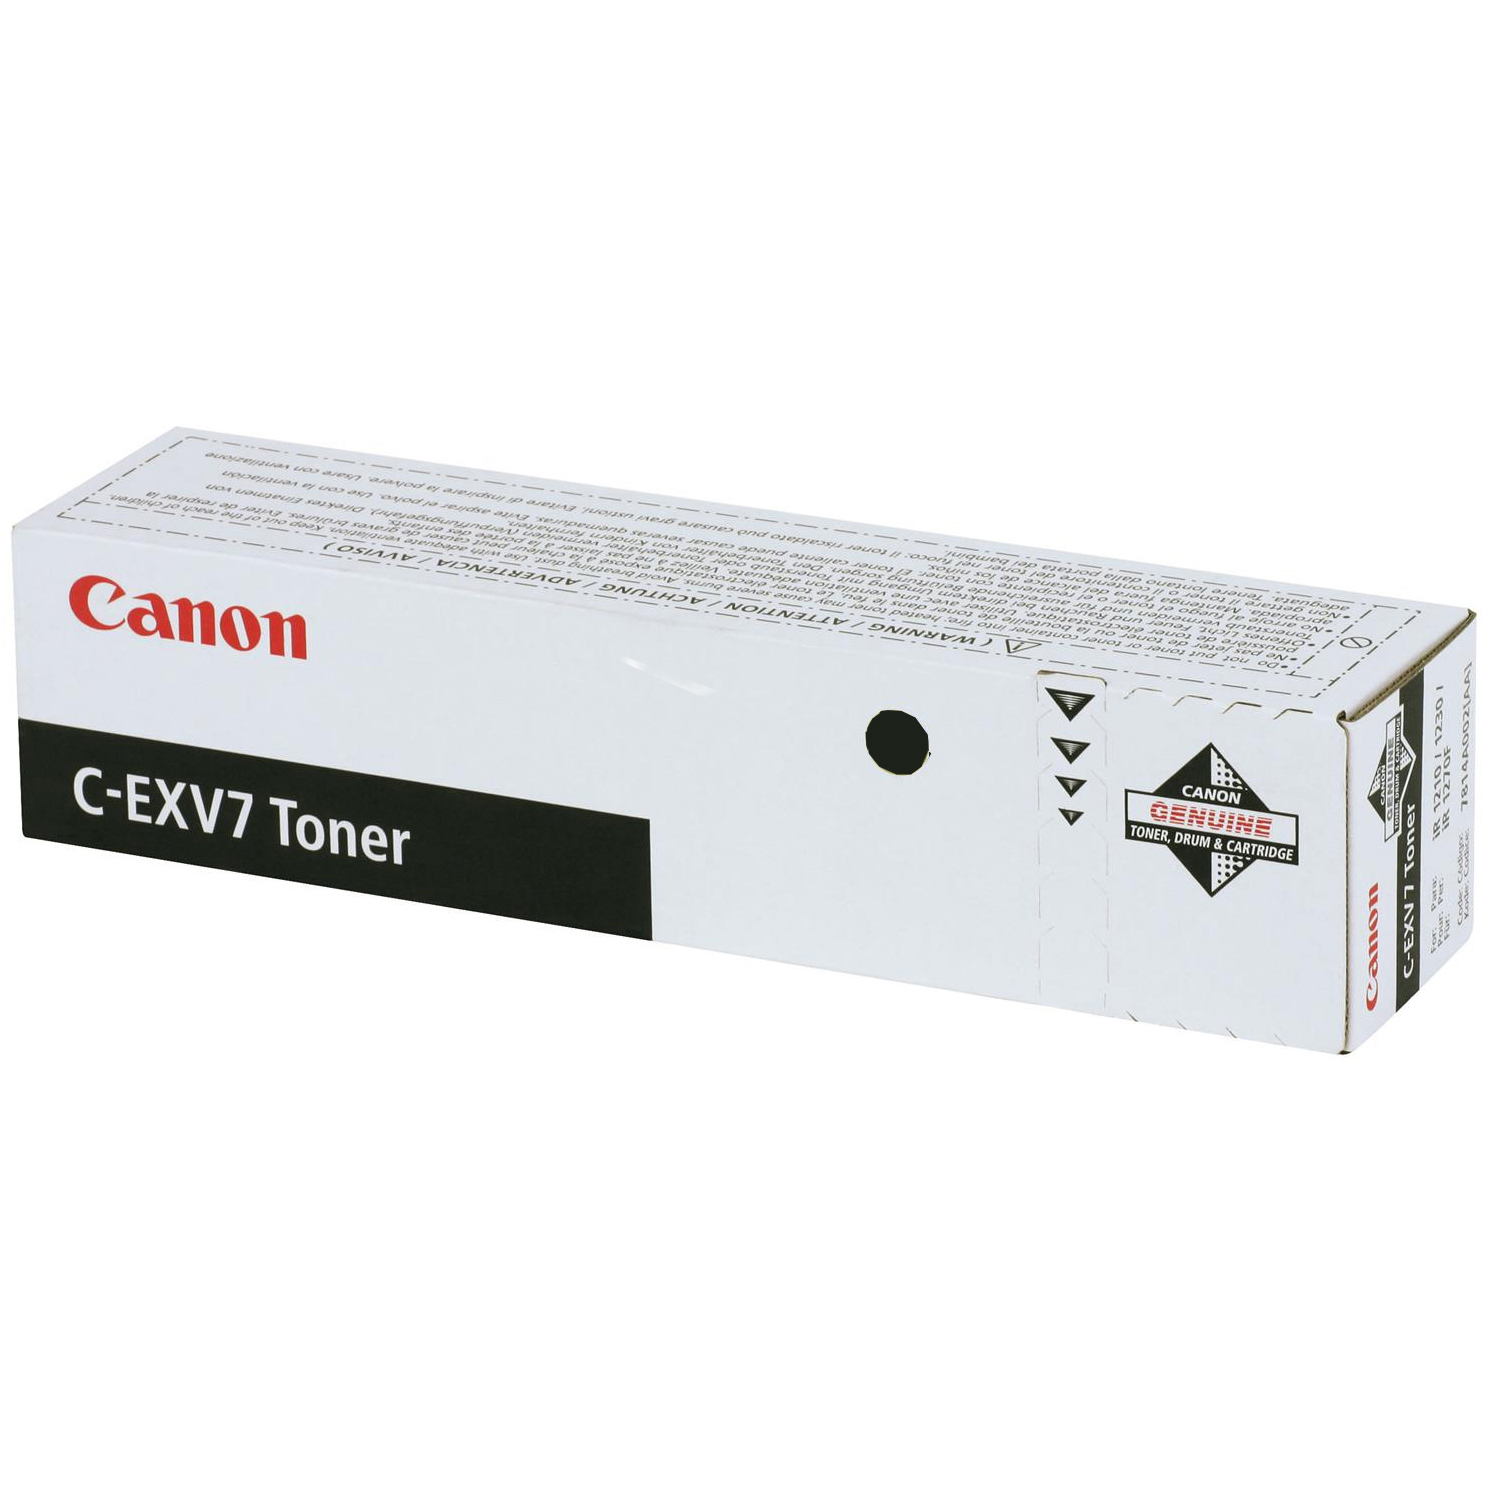 Original Canon C-EXV7 Black Toner Cartridge (GPR10/7814A002)